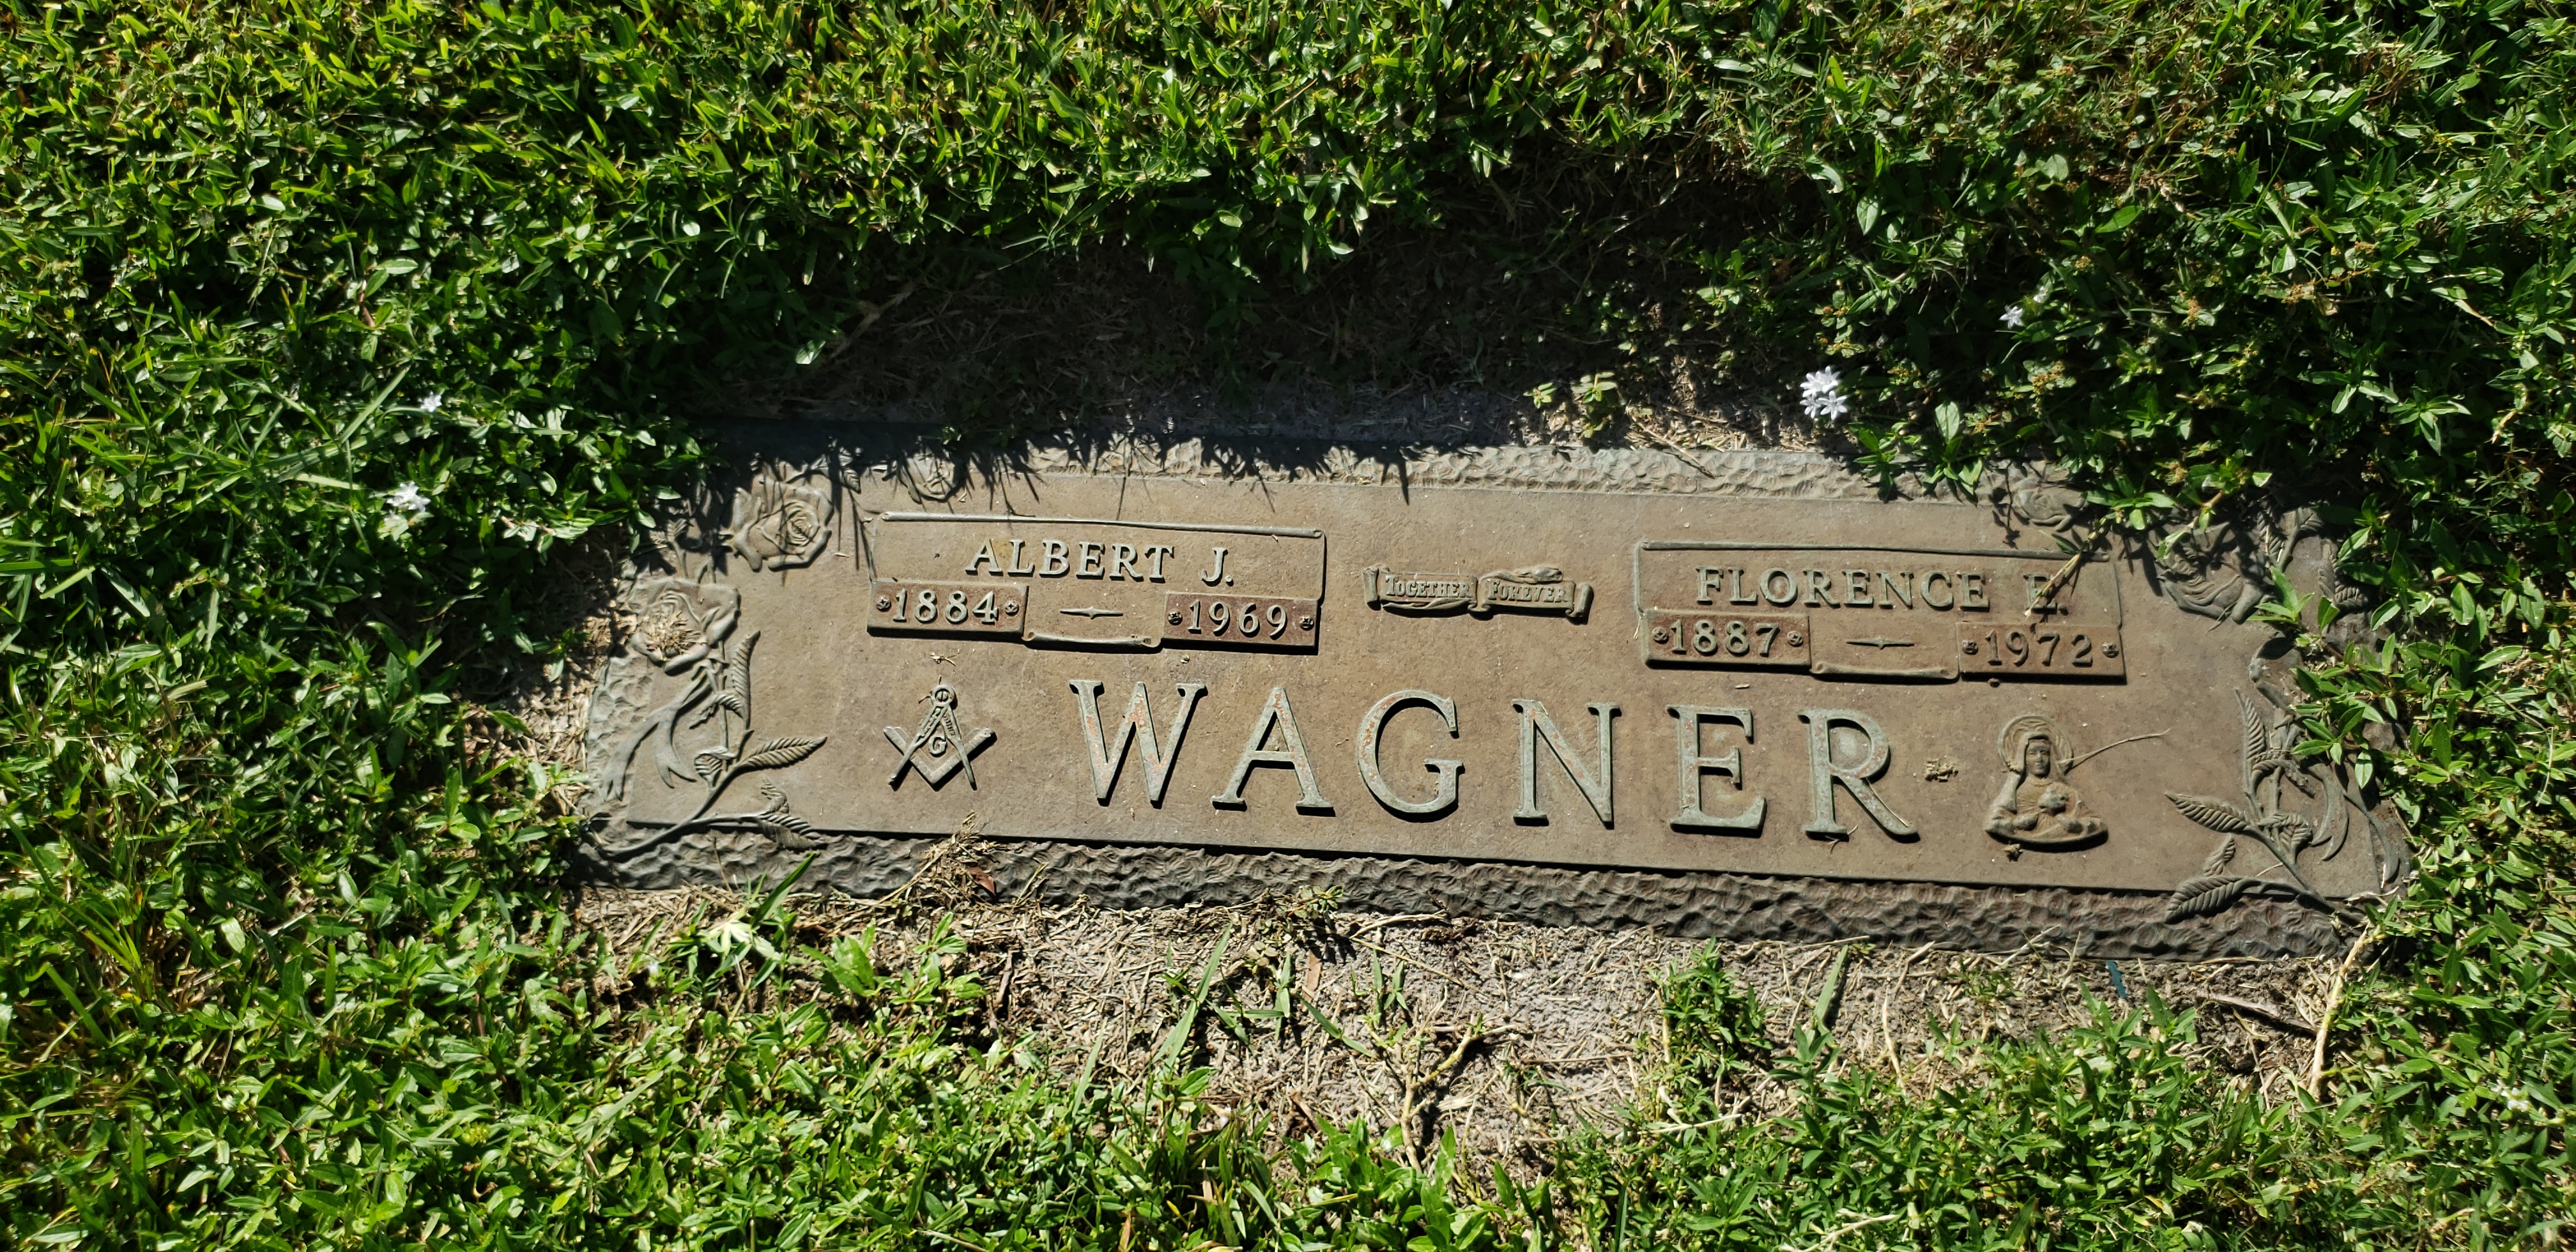 Albert J Wagner